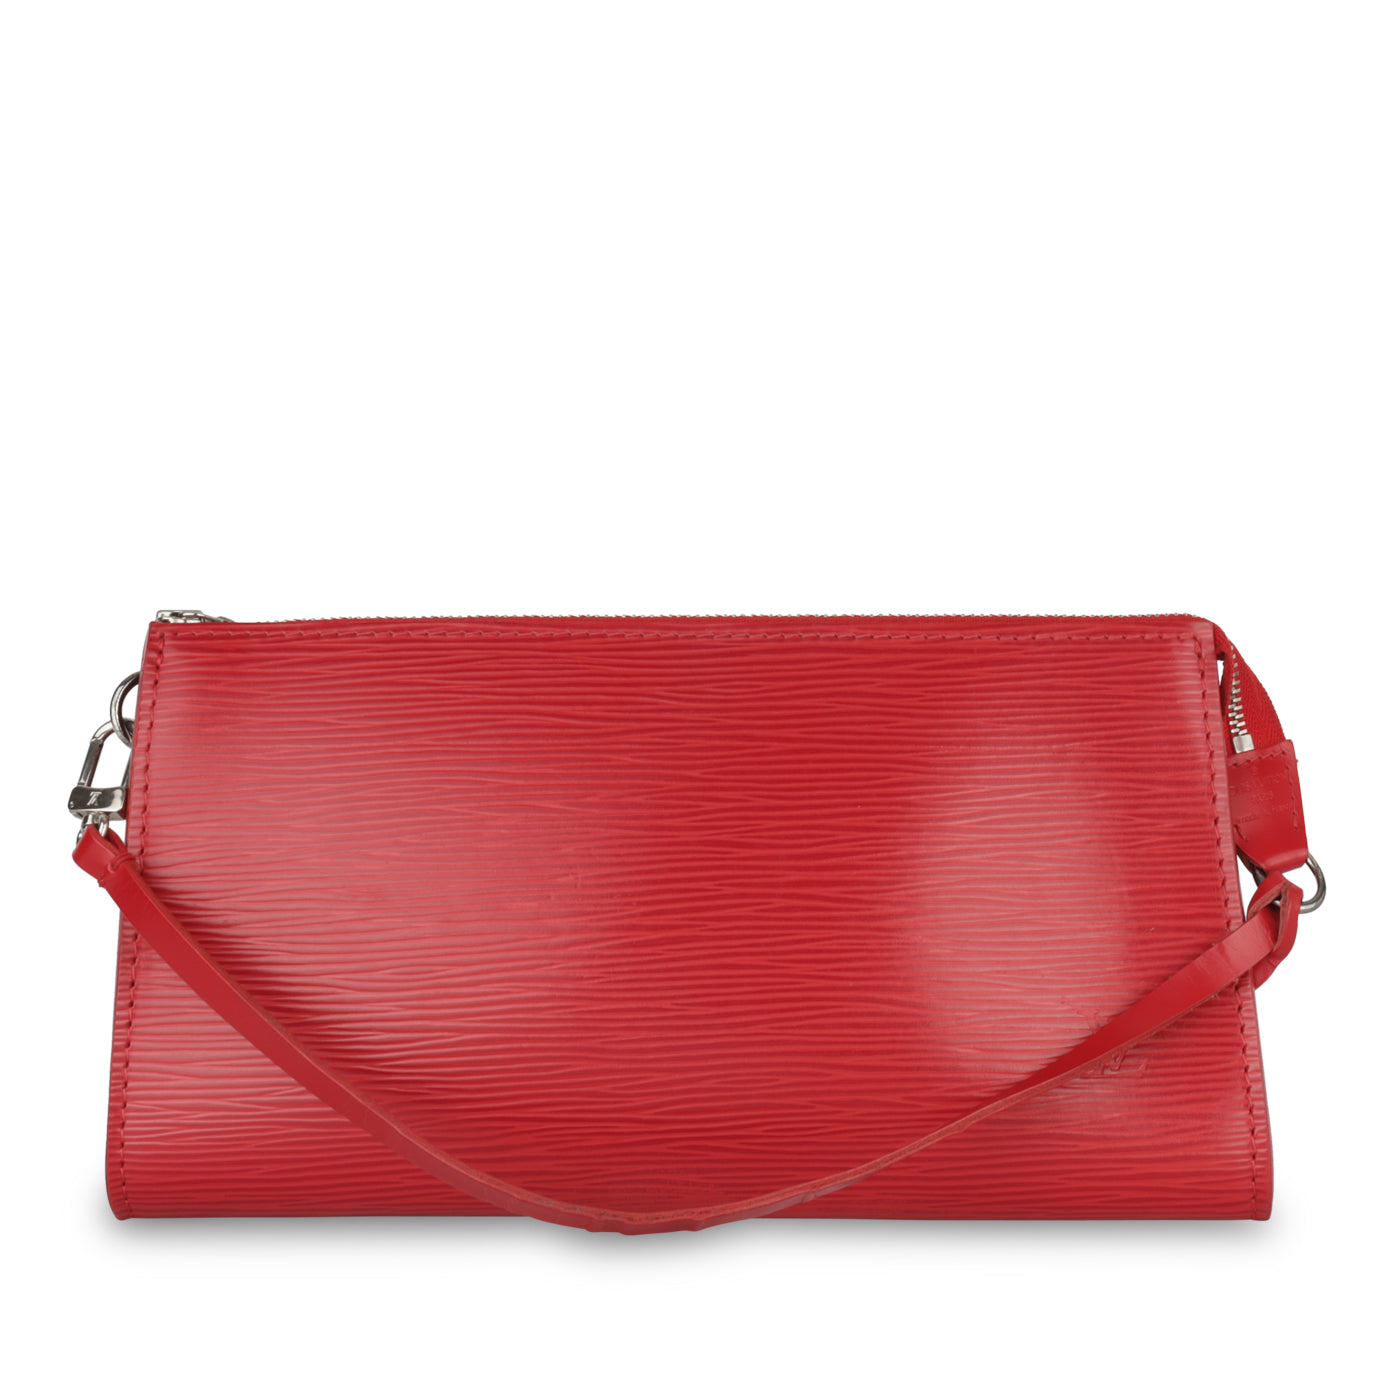 Louis Vuitton - Pochette Accessoires - Red Epi - Pre-Loved